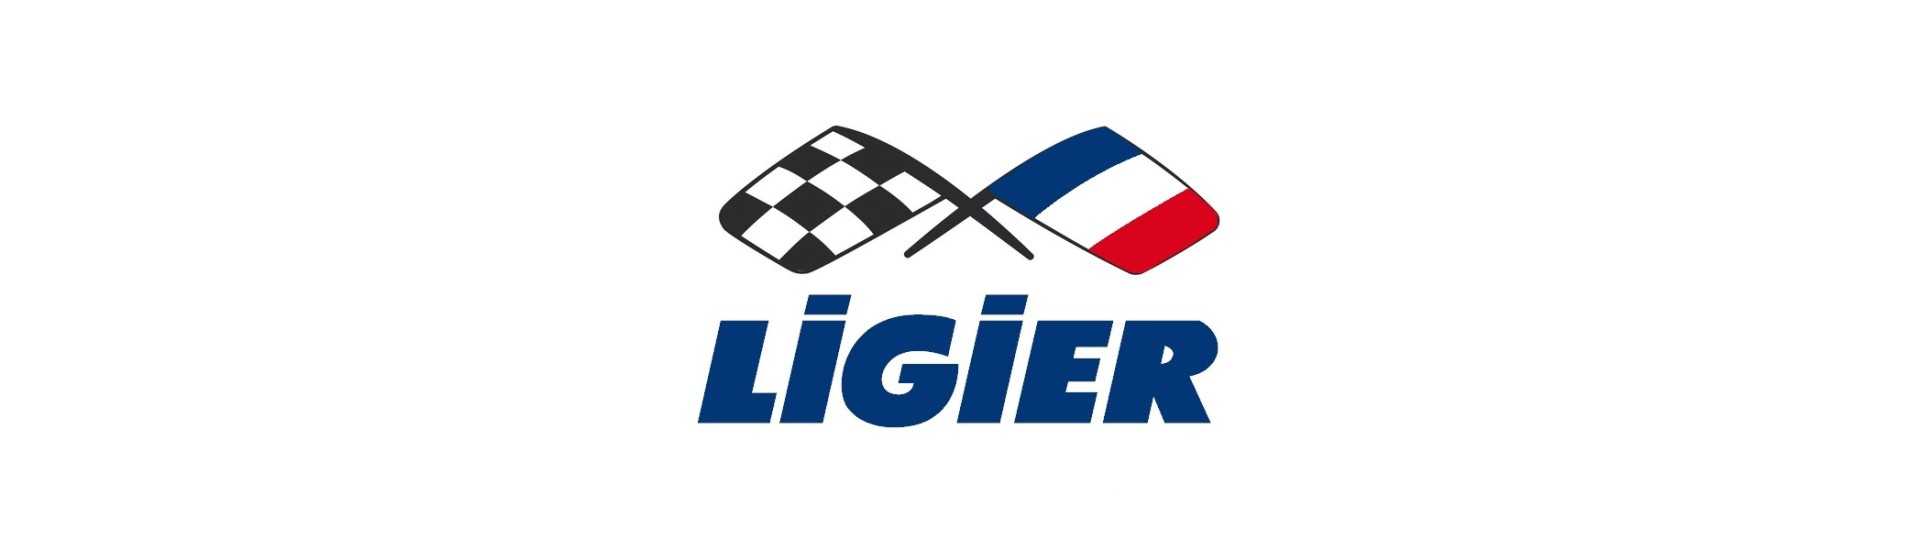 Parade Brise zum besten Preis für Auto ohne Lizenz Ligier